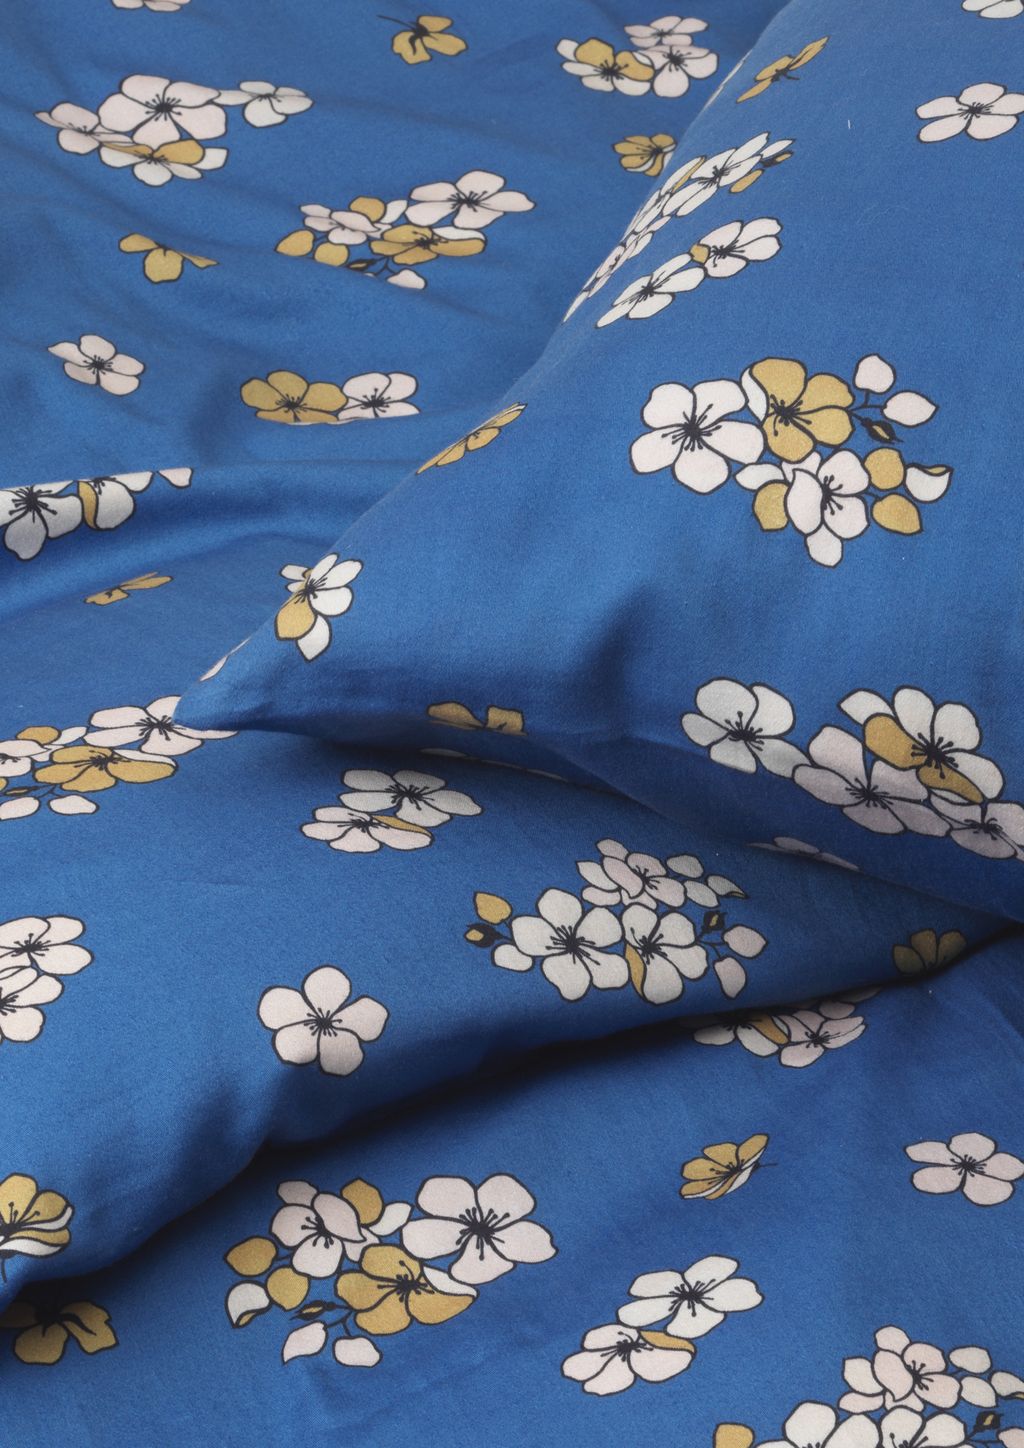 Juna grand behagelig seng lin 140 x220 cm, blå